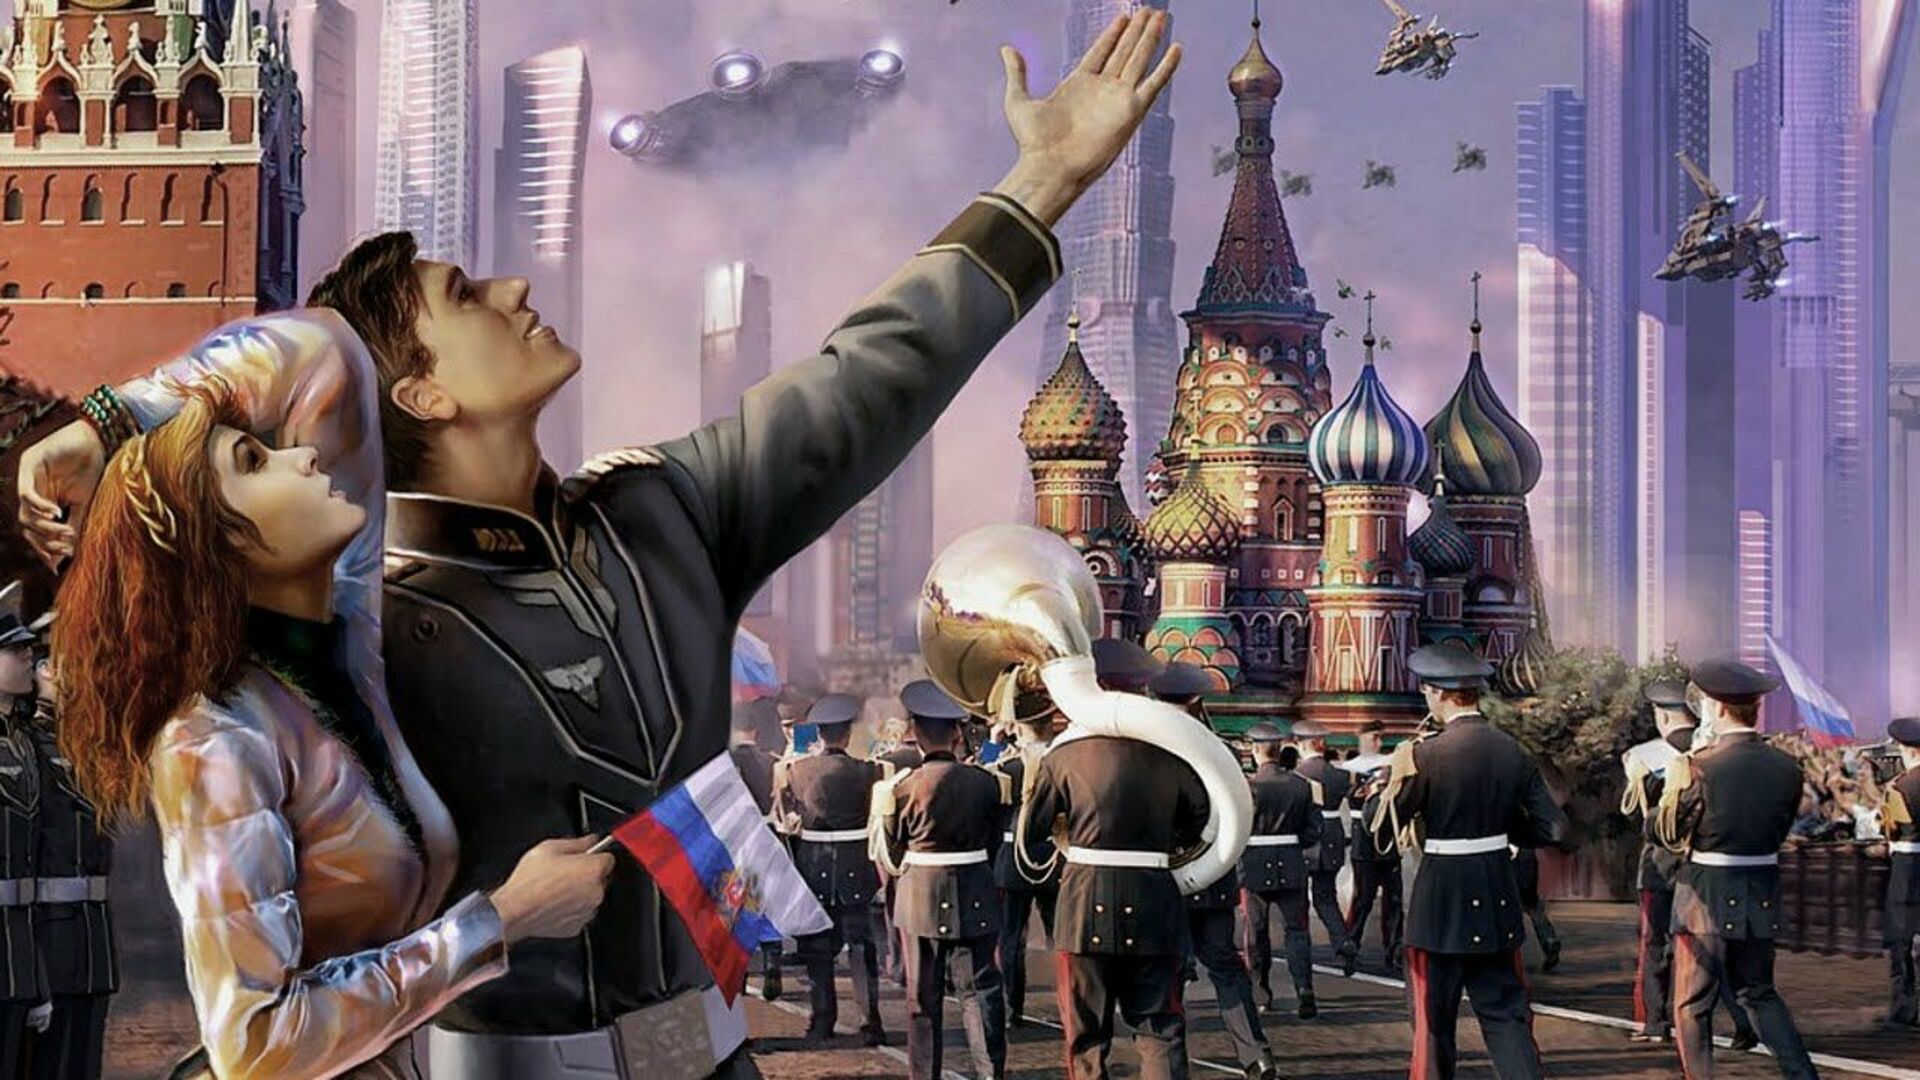 Группа будущее человечества. Россия будущего. Прекрасная Россия будущего. Россия в будущем. Образ будущего.